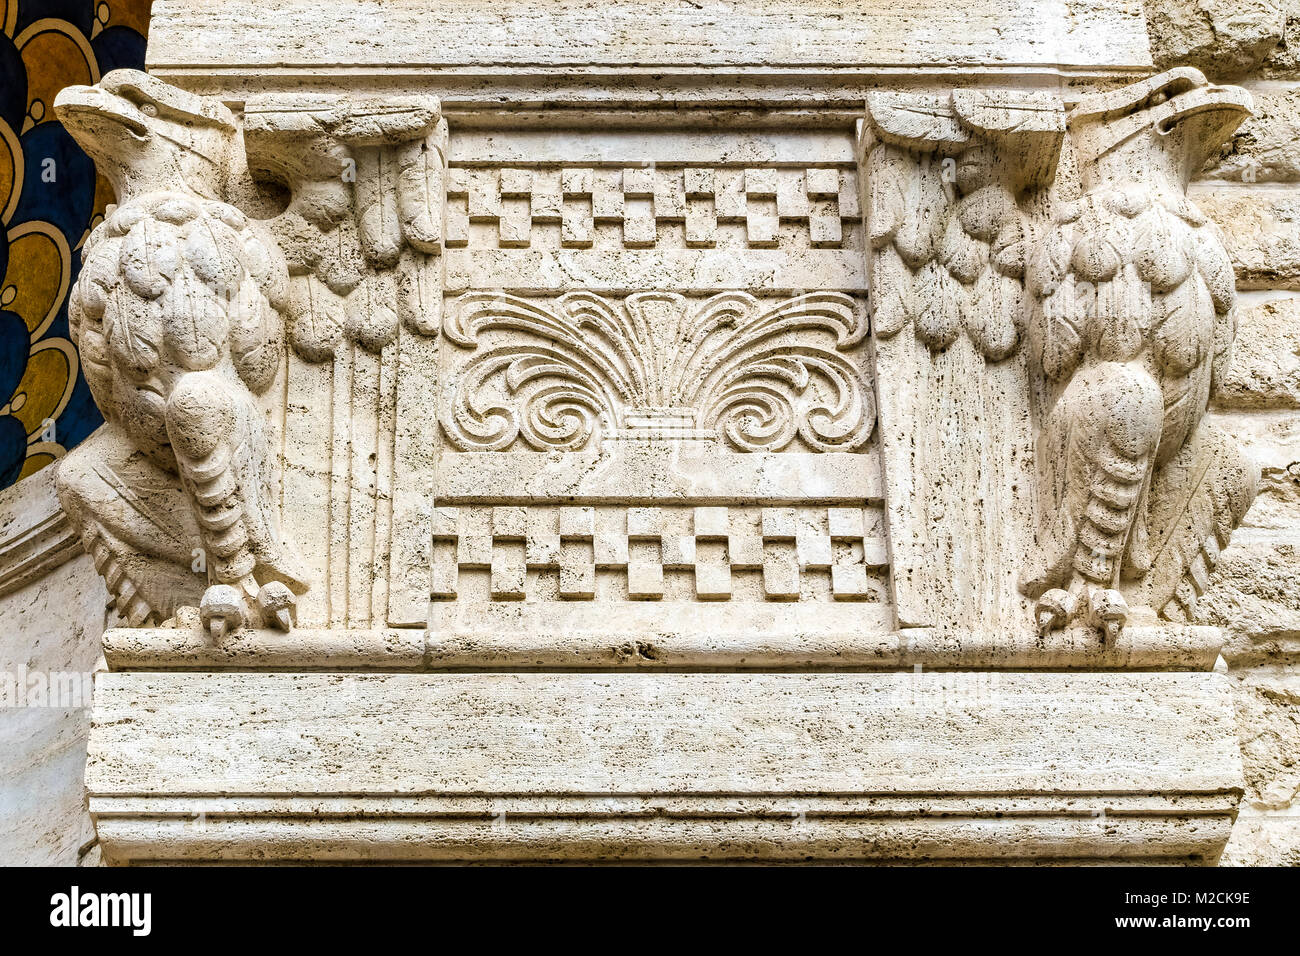 Les aigles en sculpture à l'entrée d'une maison vacances la façade de l'immeuble. Architecte Gino Coppedè. Style Art déco. Rome,Italie. Close up, détail. Banque D'Images